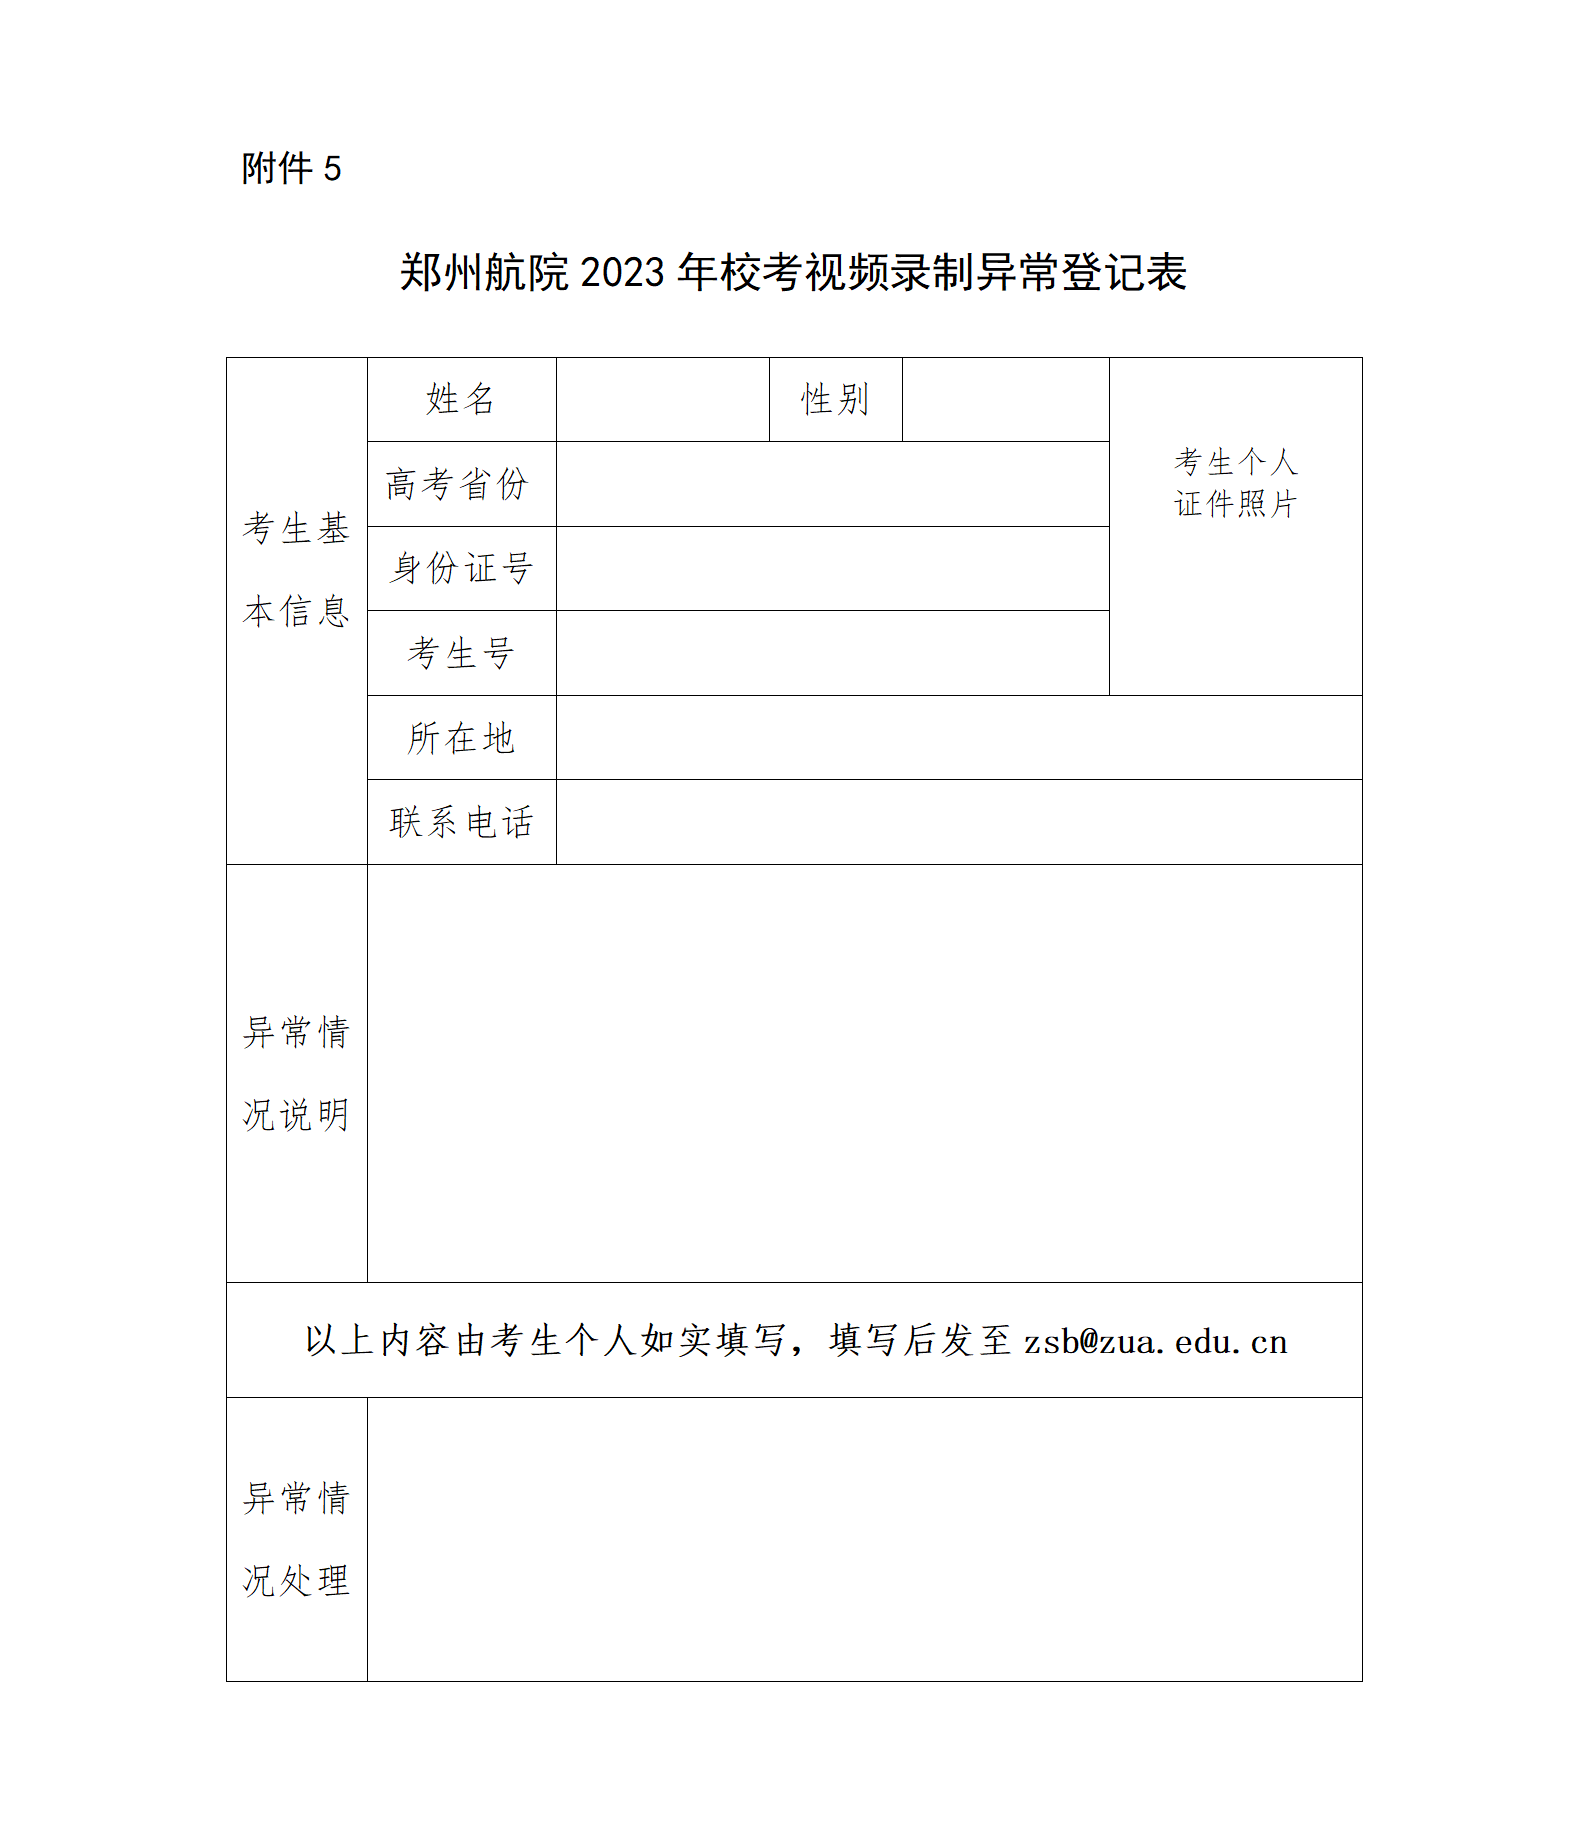 附件3-郑州航院2023年校考视频录制异常登记表_01.png